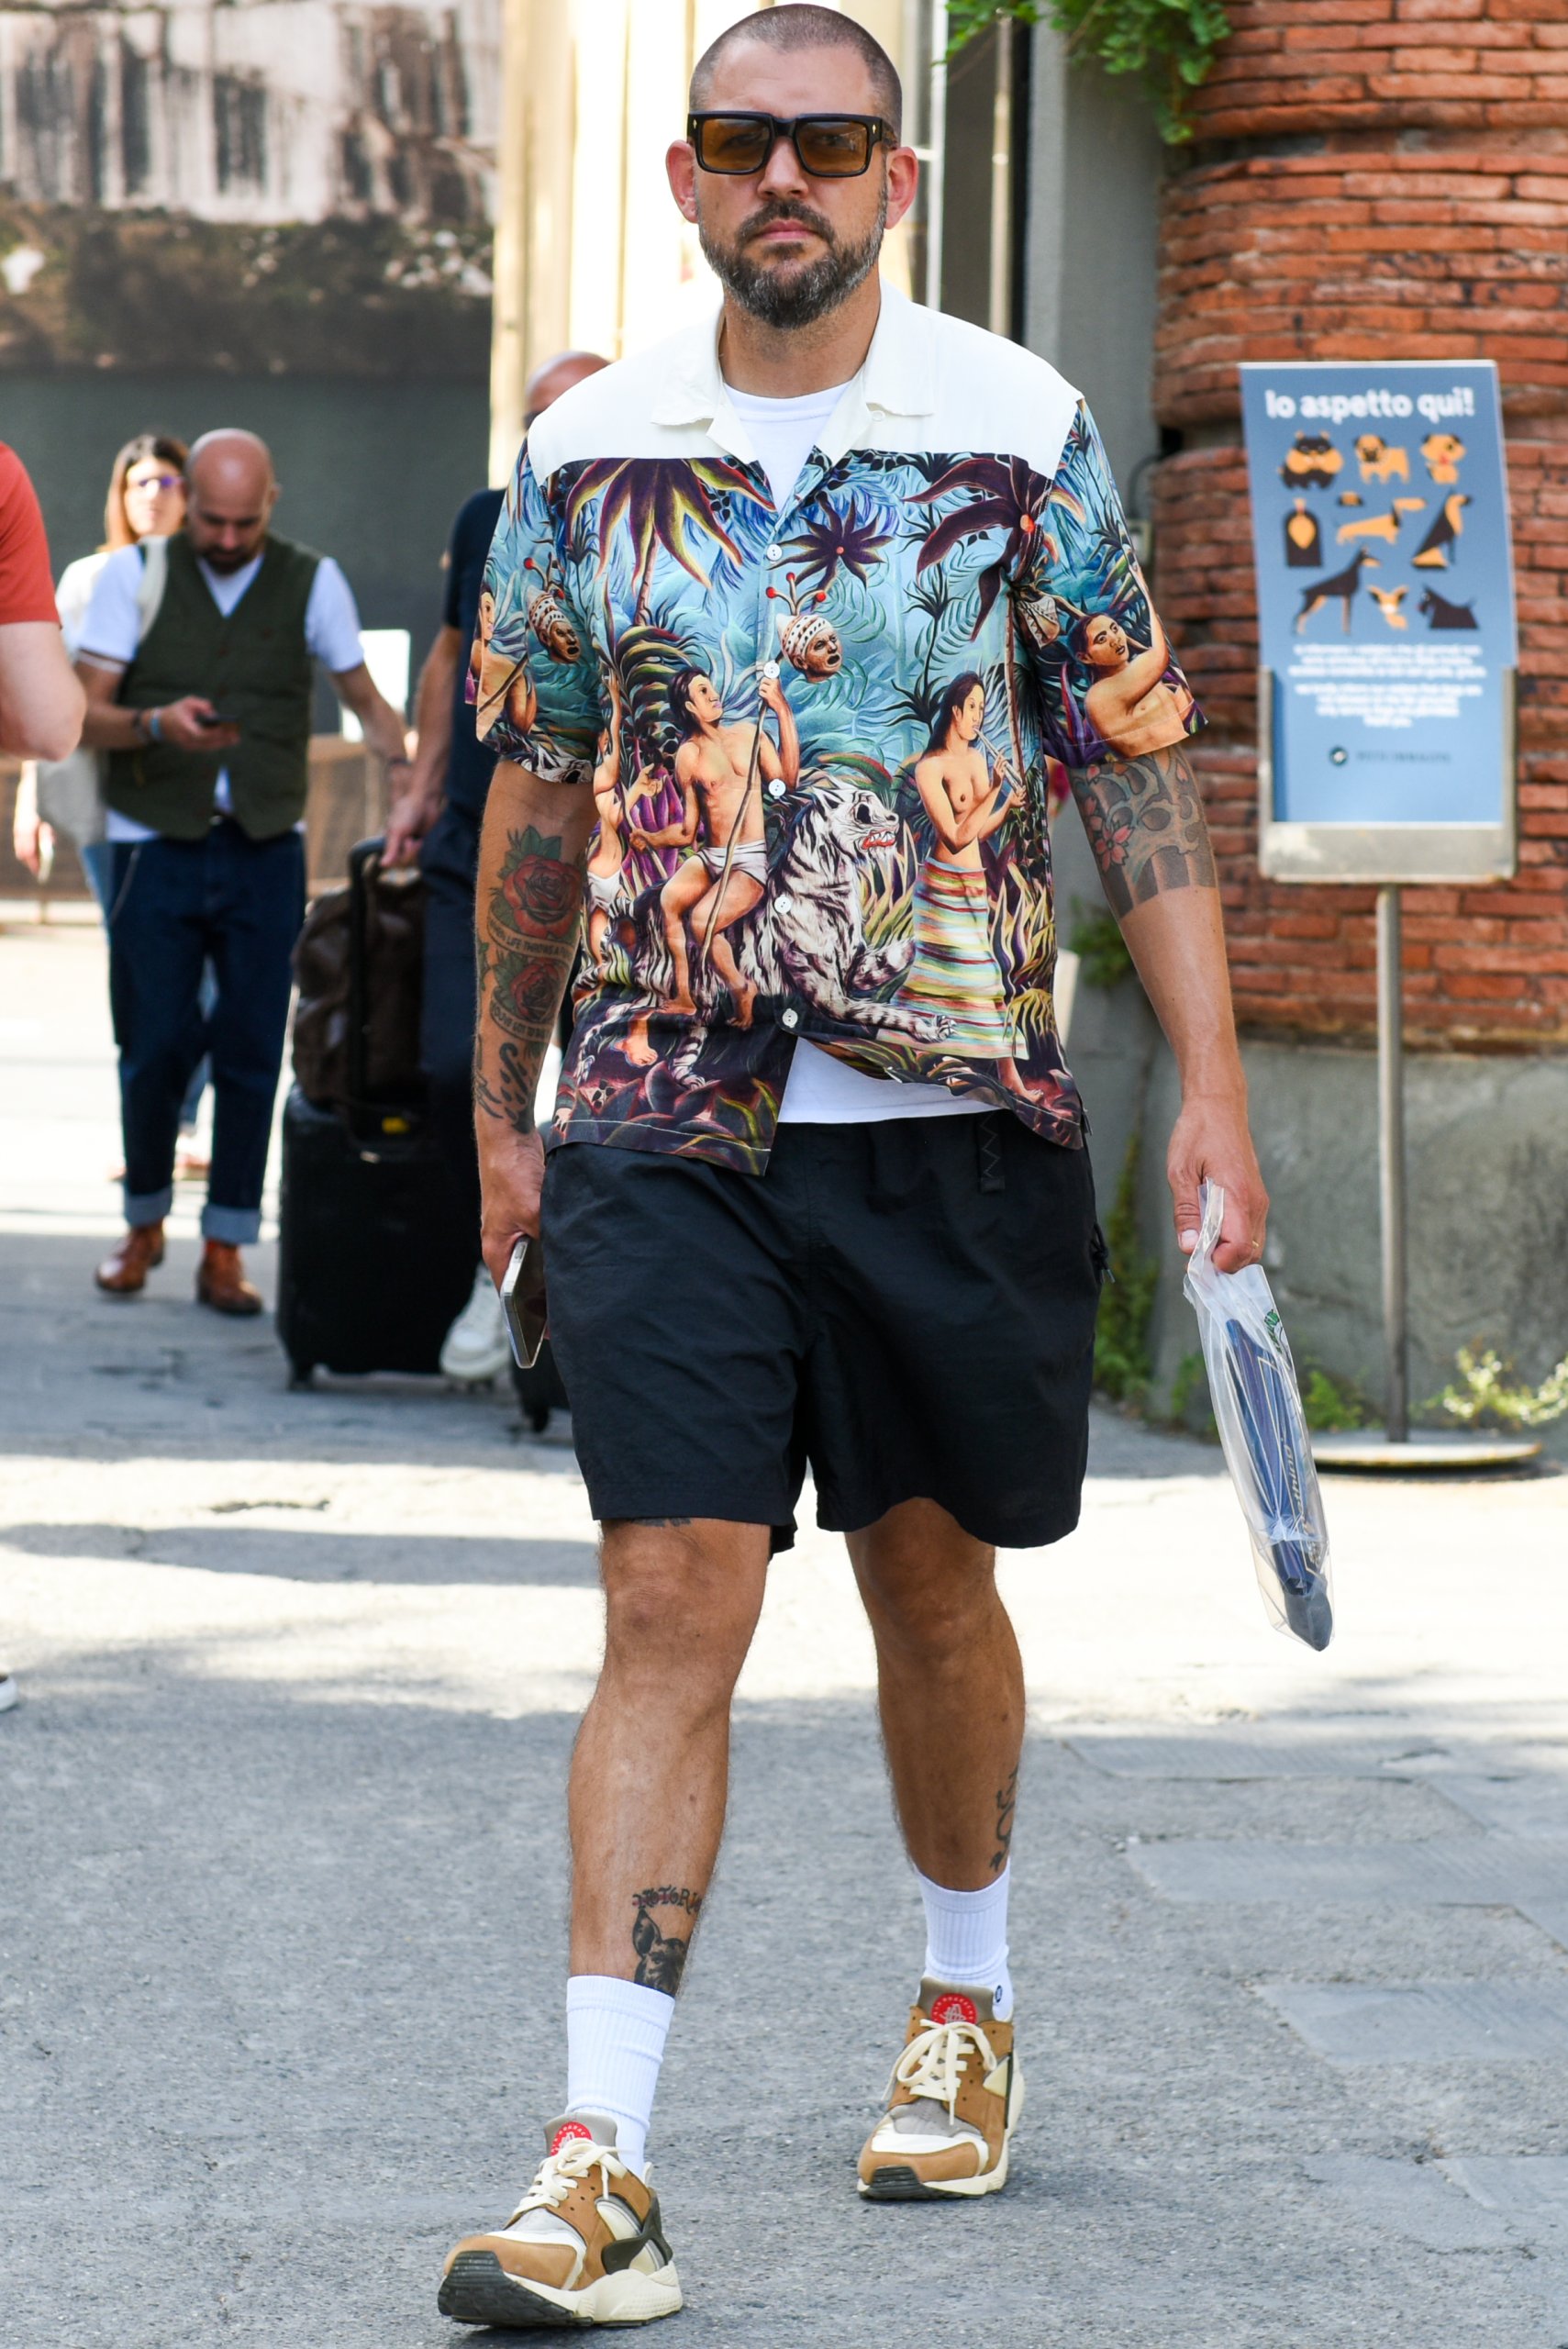 ショートパンツを穿いたメンズ夏コーデをおしゃれにキメるなら 海外ストリートスナップで着こなし事例をチェック メンズファッションメディア Punipunijapanshops 男前研究所